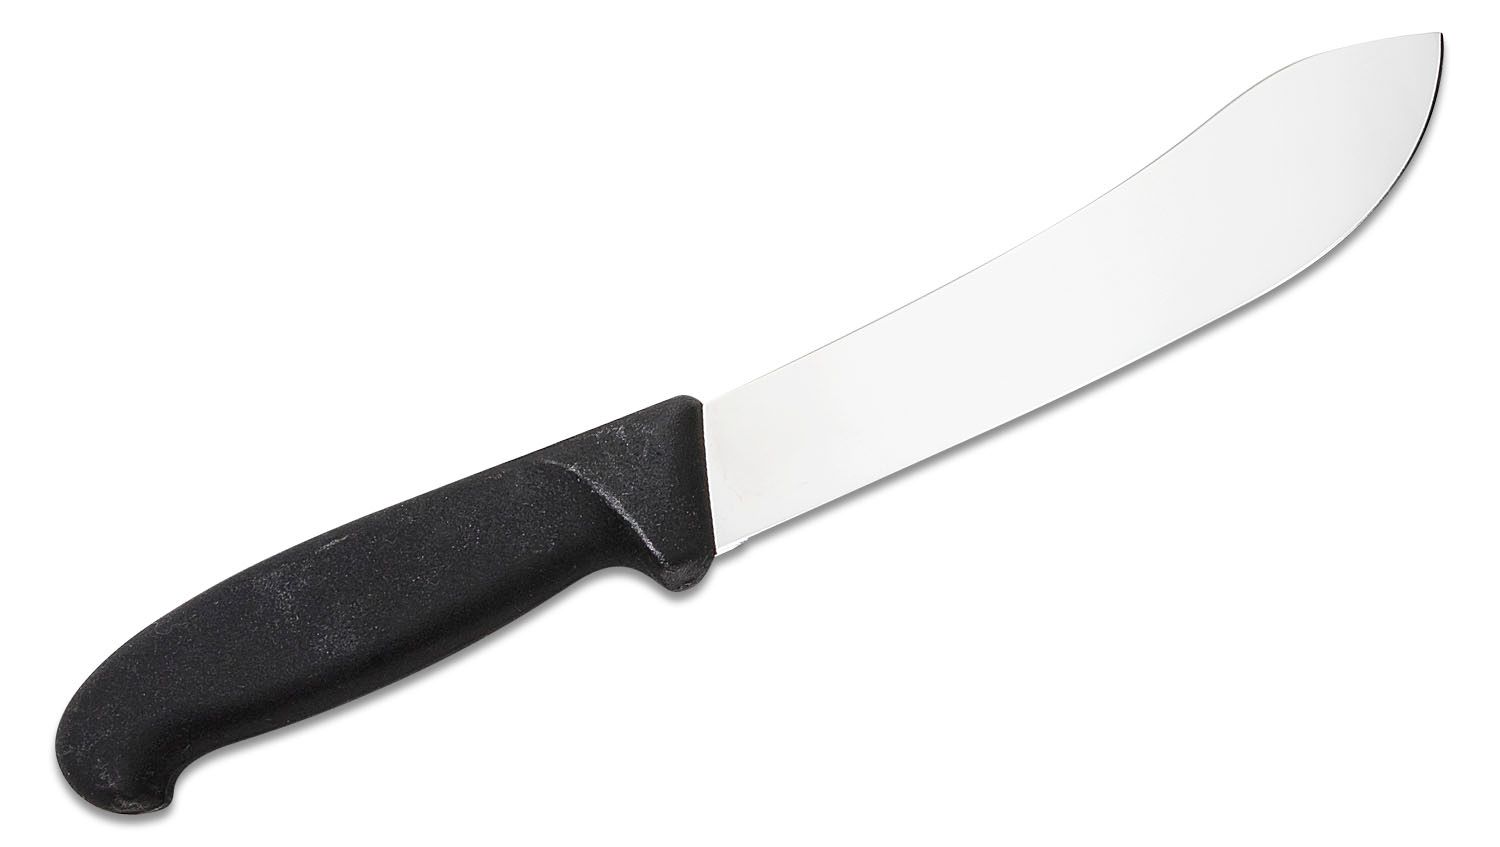 Victorinox Forschner Fibrox 7 inch Butcher Knife, Black TPE Handle (Old Sku  40635)